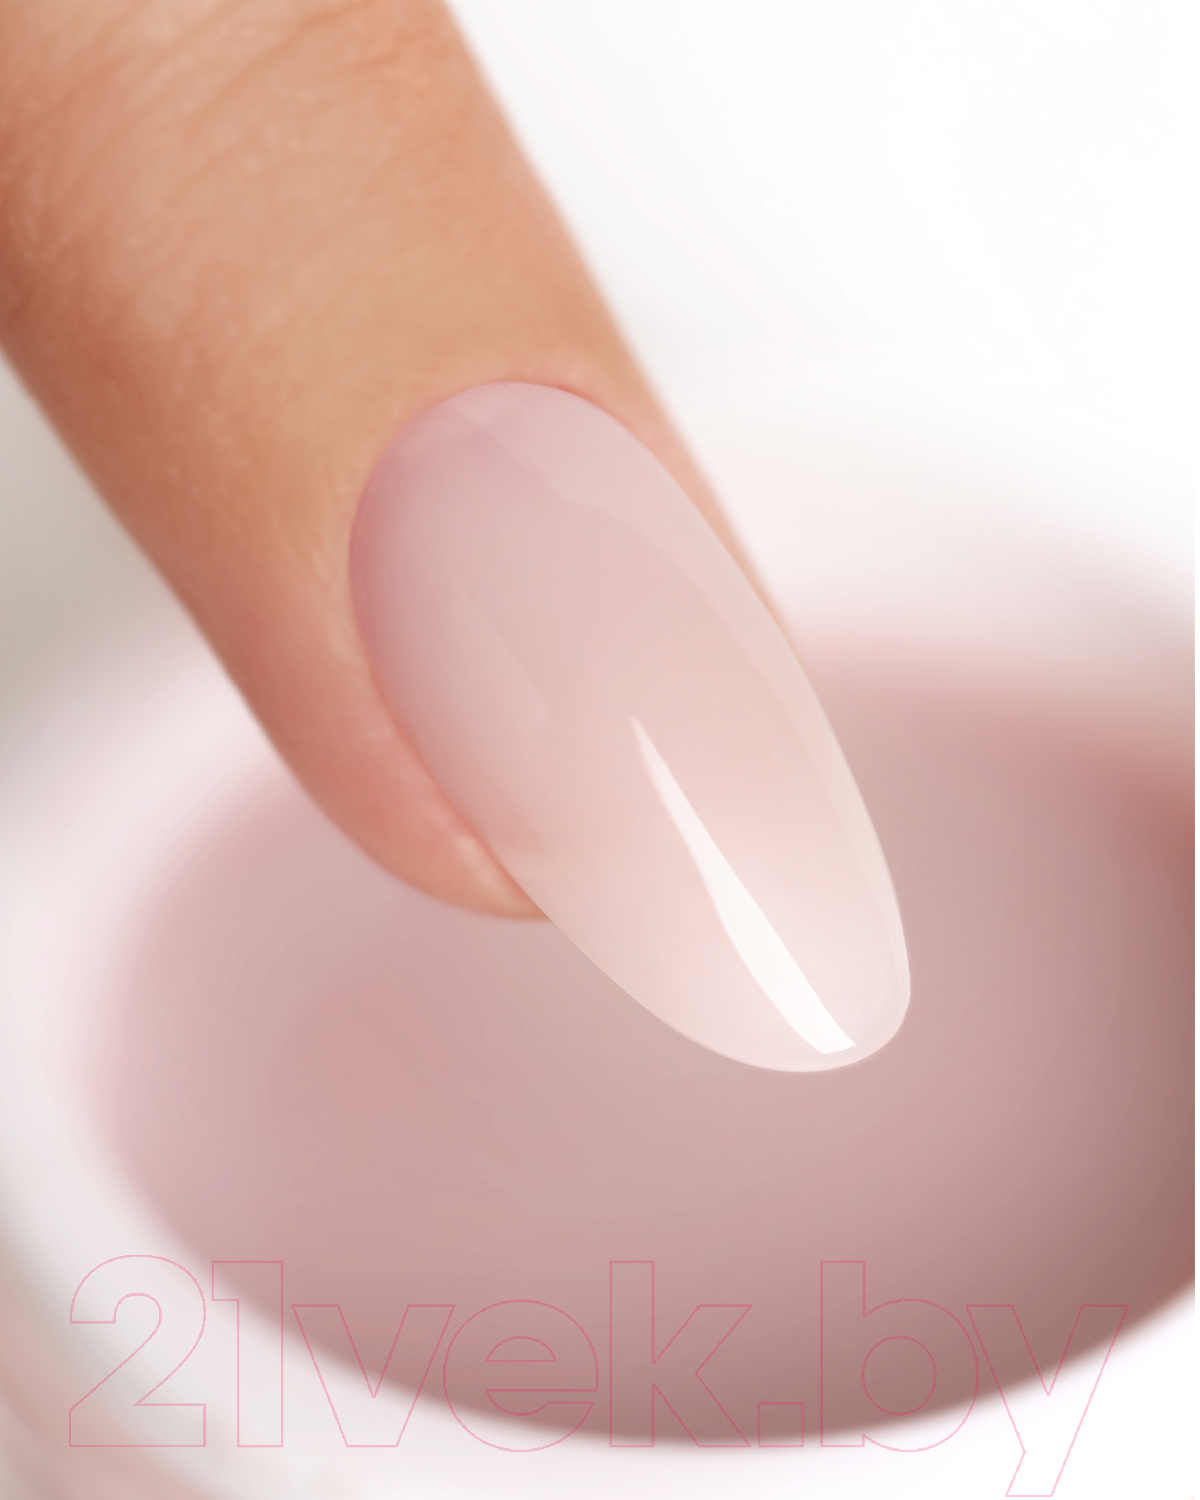 Моделирующий гель для ногтей E.Mi Soft Ash Pink Gel